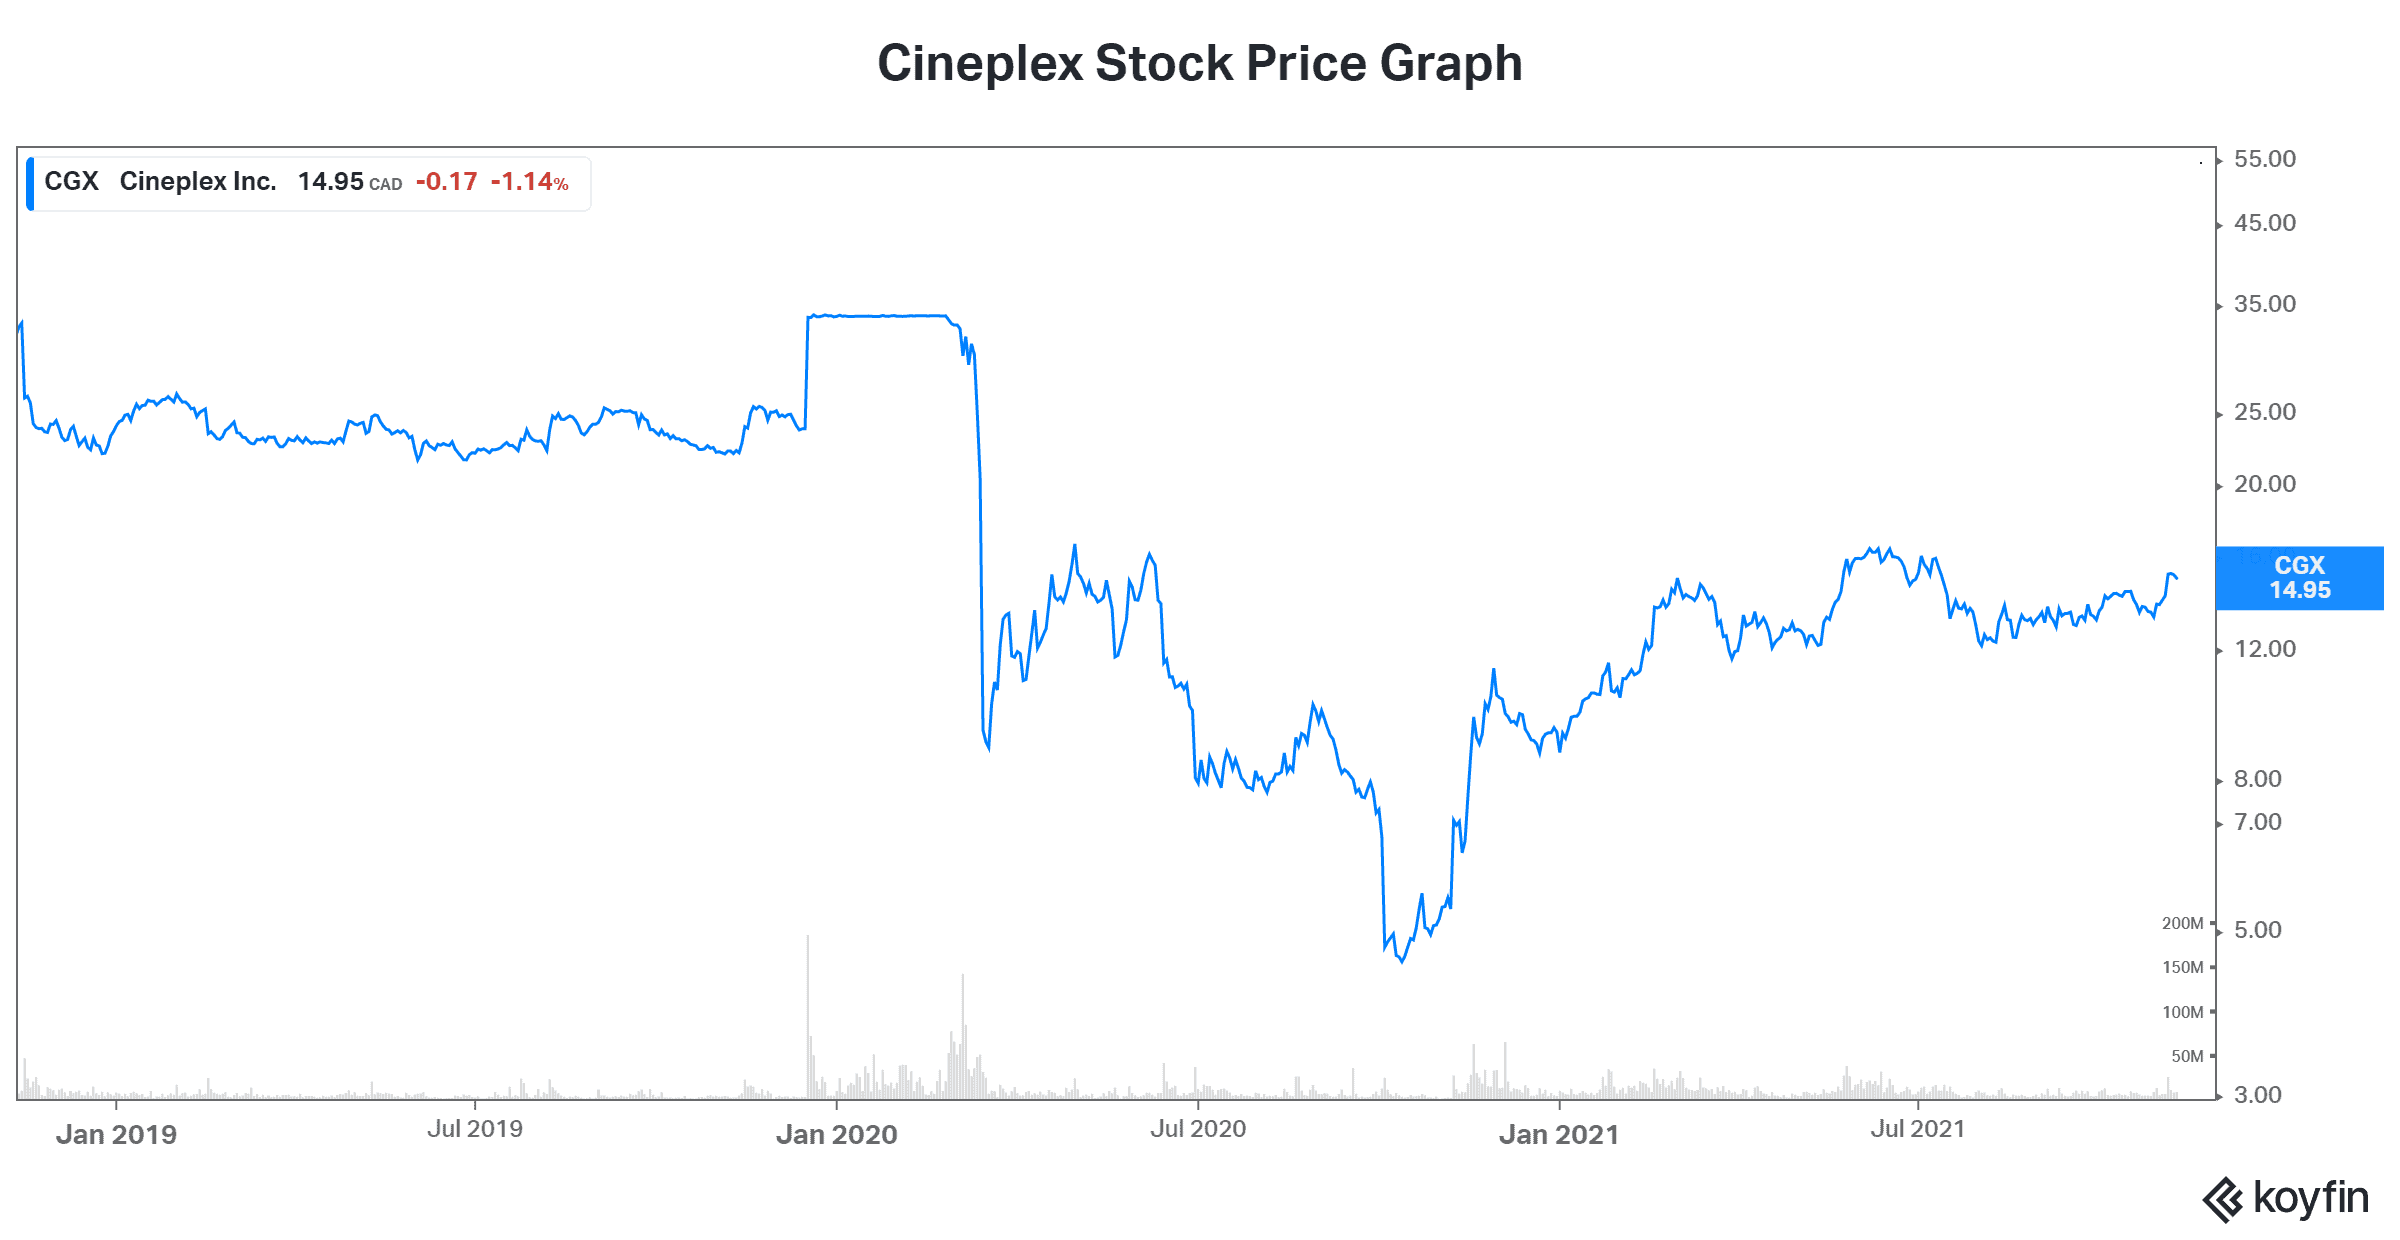 Cineplex stock price